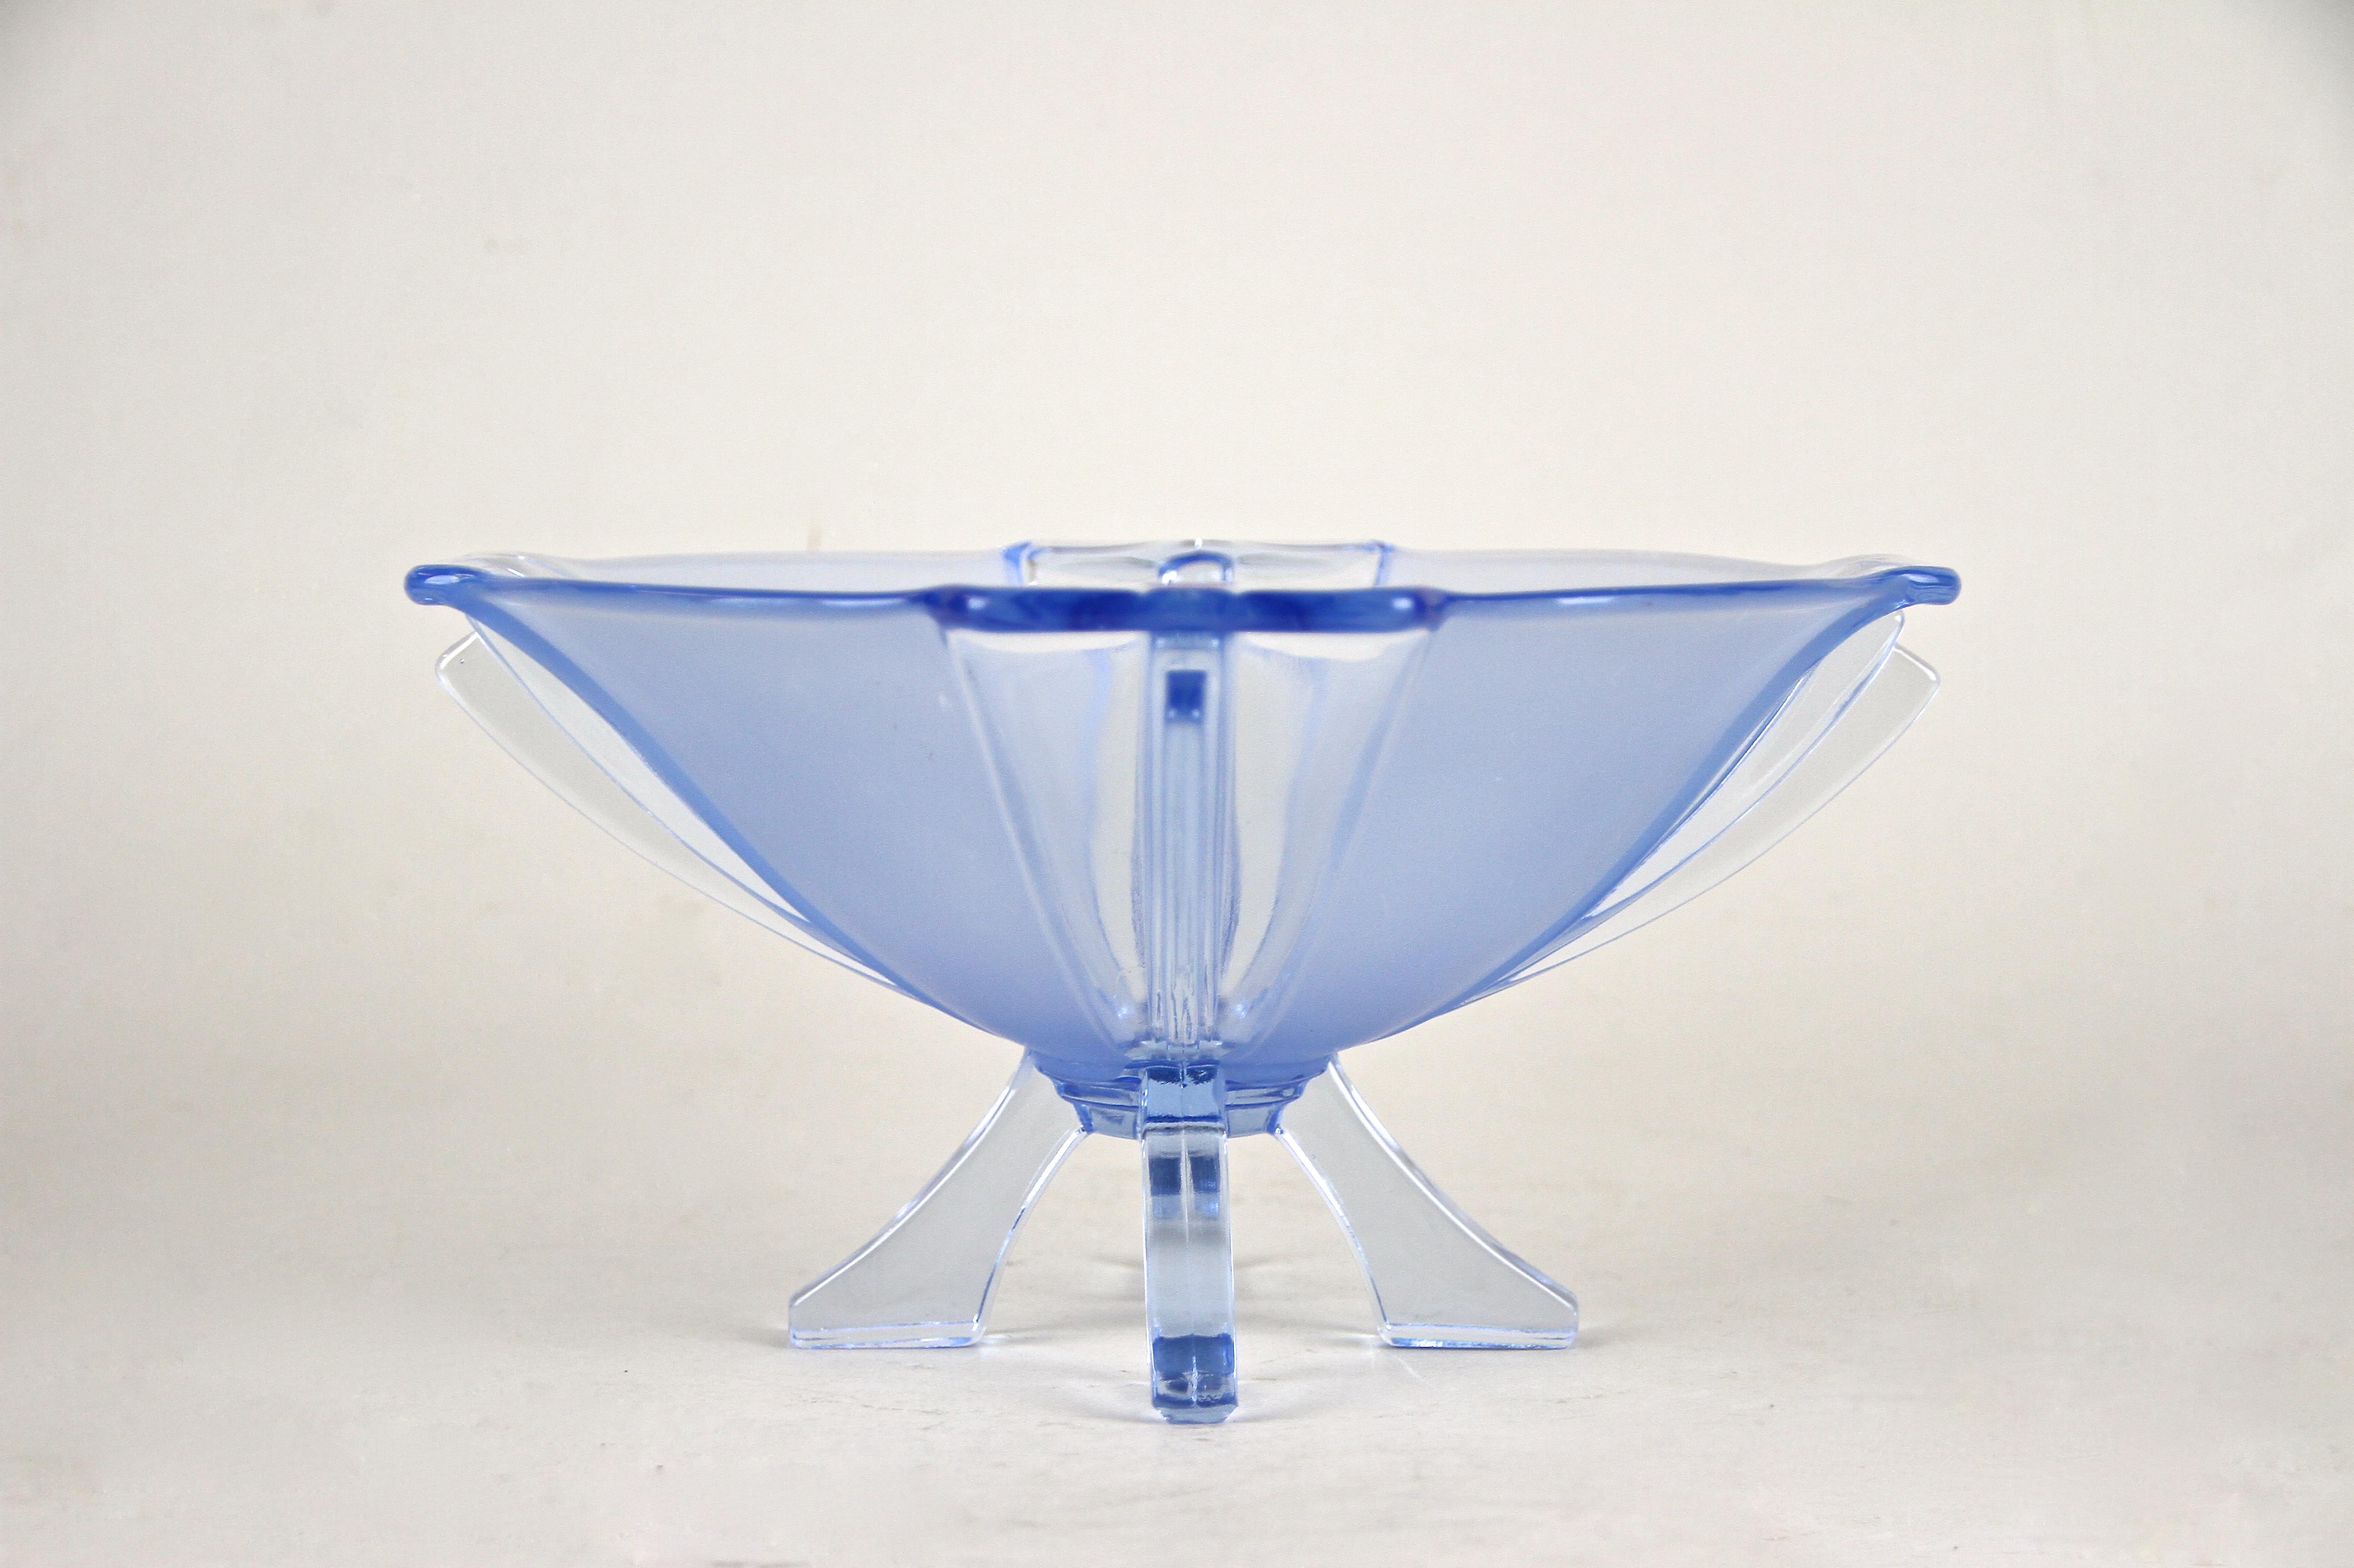 Hochdekorative blaue Art-Déco-Glasschale aus dem frühen 20. Jahrhundert in Österreich. Diese schöne Glasschale aus der Zeit um 1920 zeigt ein einzigartiges Design, das die berühmte Formensprache des Art Déco widerspiegelt. Die aufwendig gearbeitete